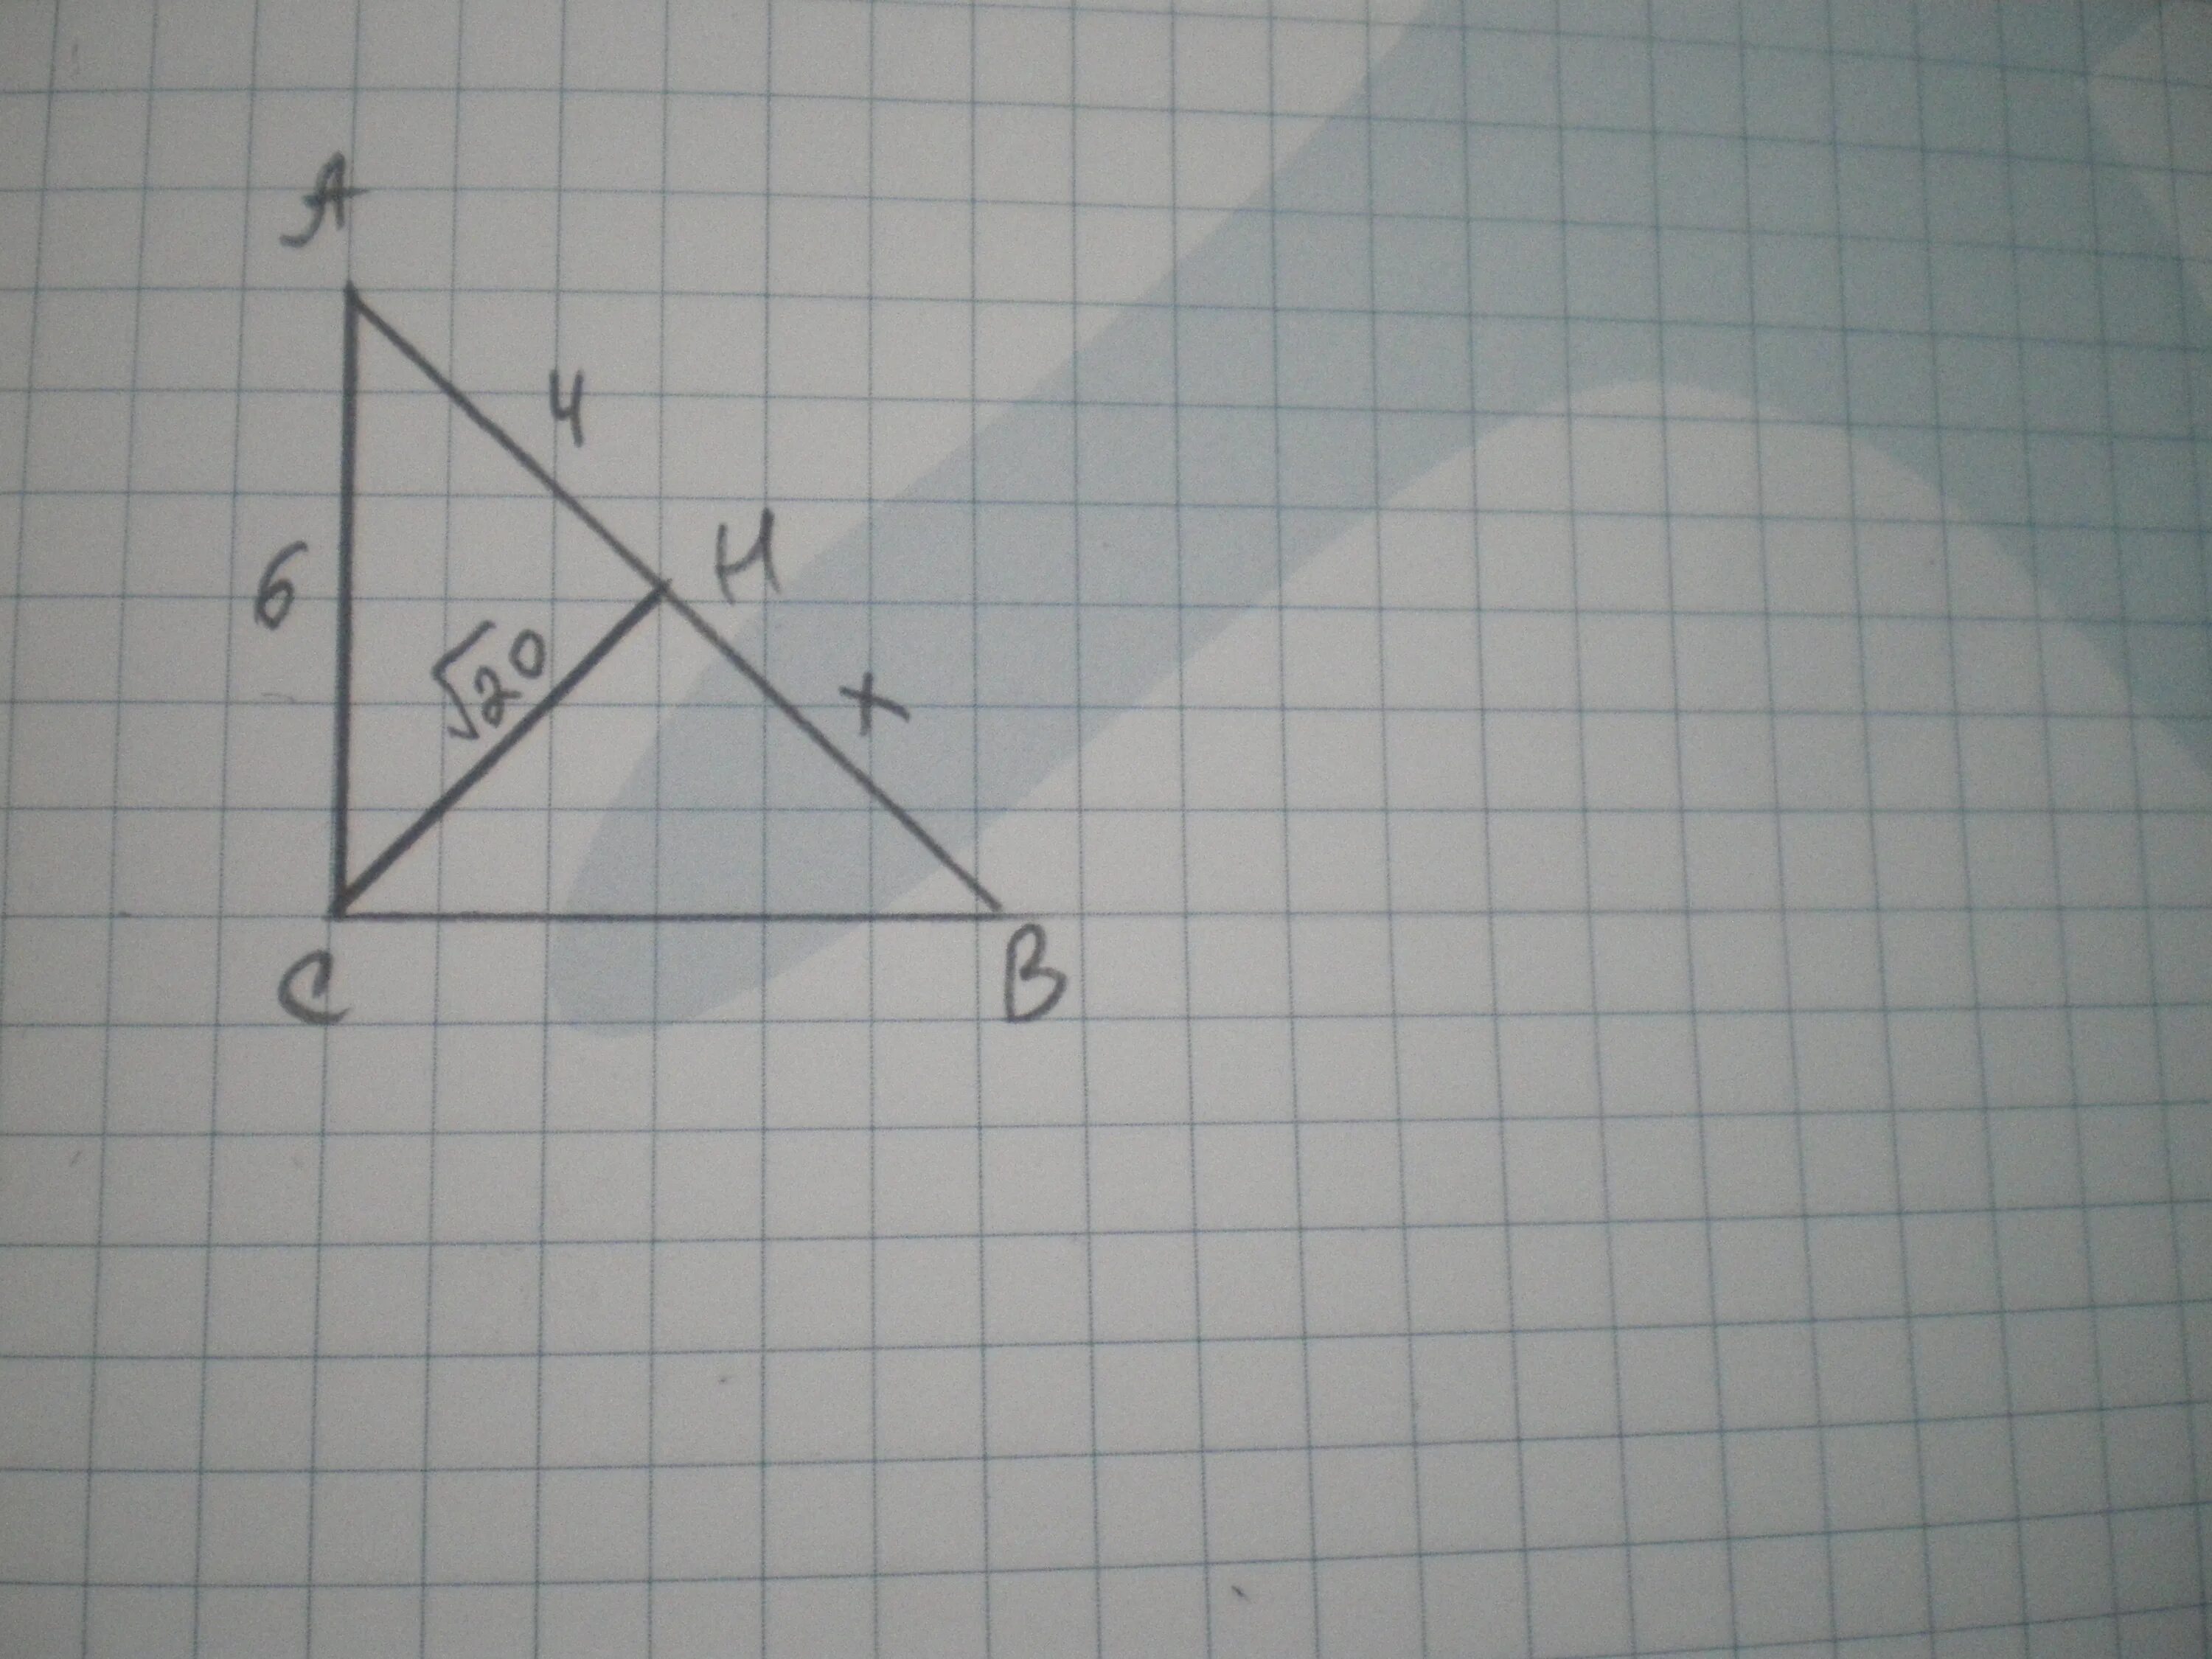 5 20 найти ch. В прямоугольном треугольнике АВС из вершины прямого угла с проведена. Из вершины прямого угла с треугольника АВС проведена высота СН. Из вершины а в прямоугольного треугольника АВС С прямым углом с. Отметь вершины всех прямых углов.